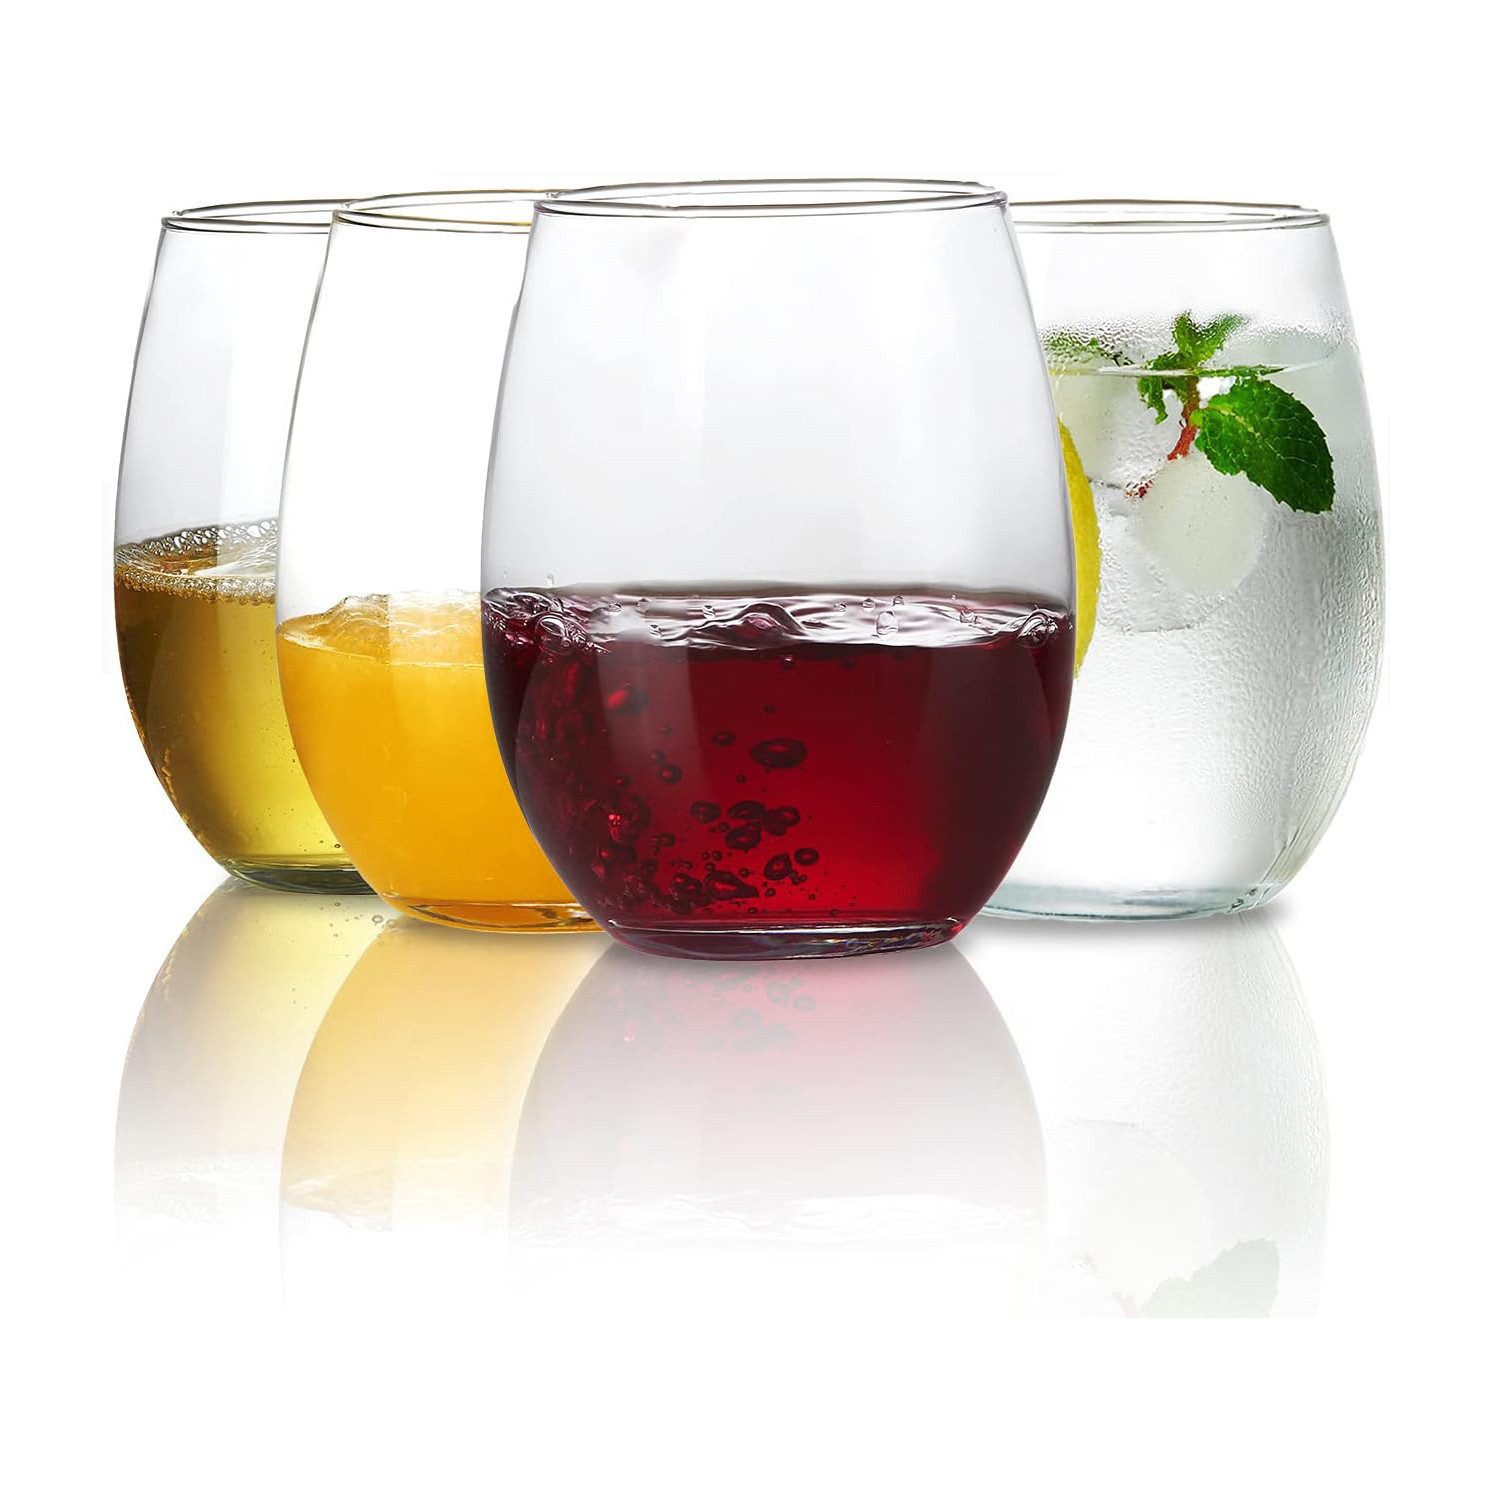 Gigicial Weinglas 4 STK Келихи, spülmaschinenfest, Perfekt für Hause, Plastik, 4-teiliges Trinkflaschen-Set580 ml